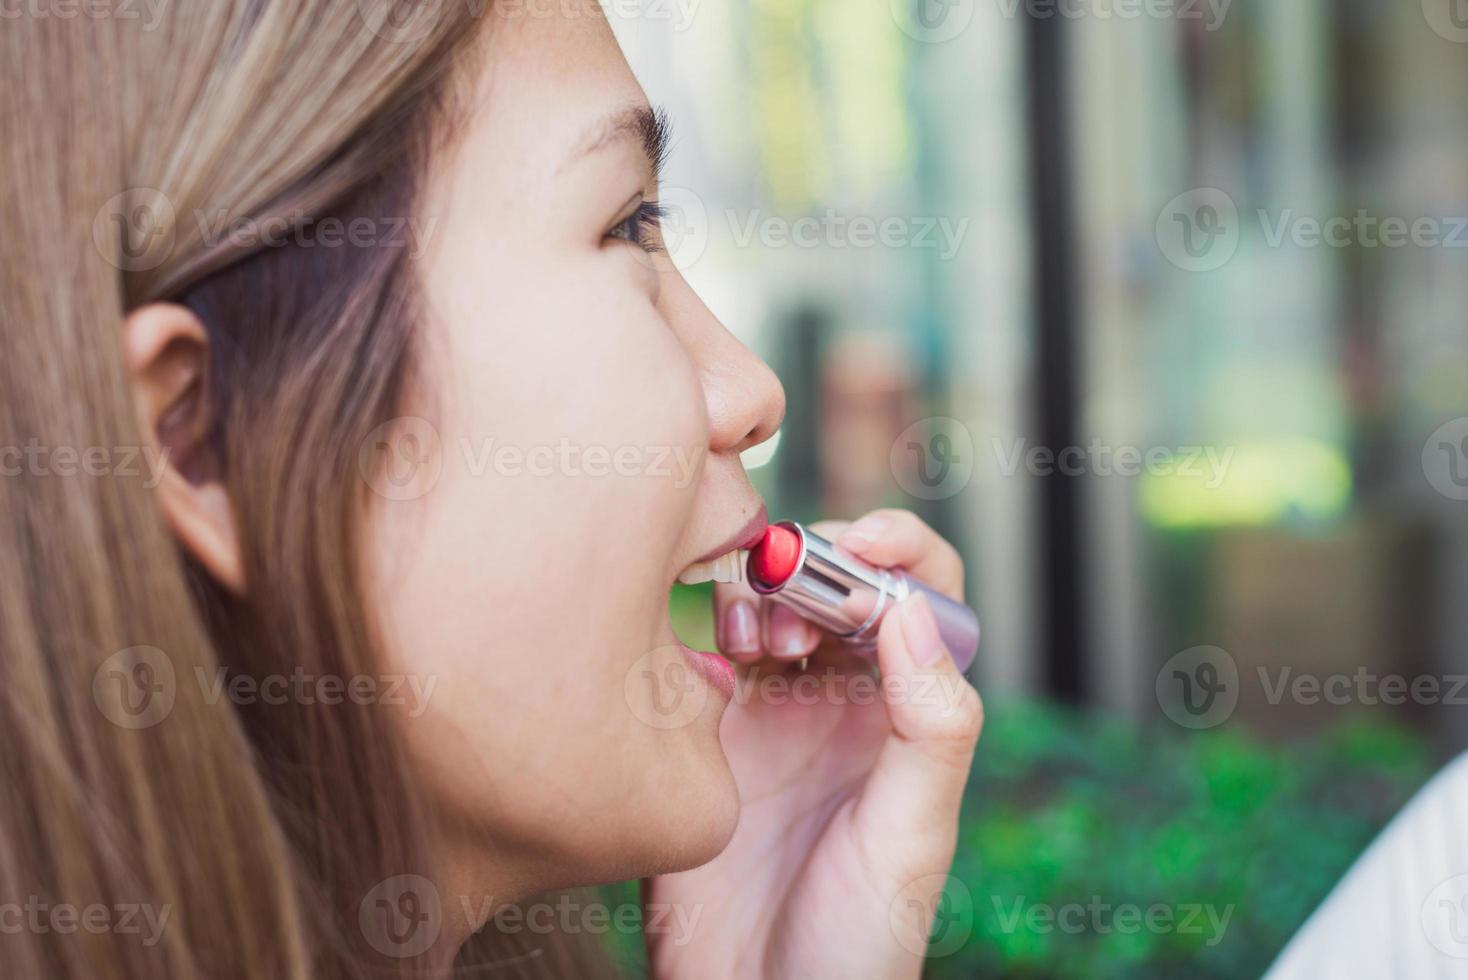 jeune femme asiatique utilisant du rouge à lèvres se maquiller devant le miroir, femme heureuse utilisant des cosmétiques de beauté pour s'améliorer prête à travailler dans la chambre à la maison. femmes de style de vie à la maison concept. photo